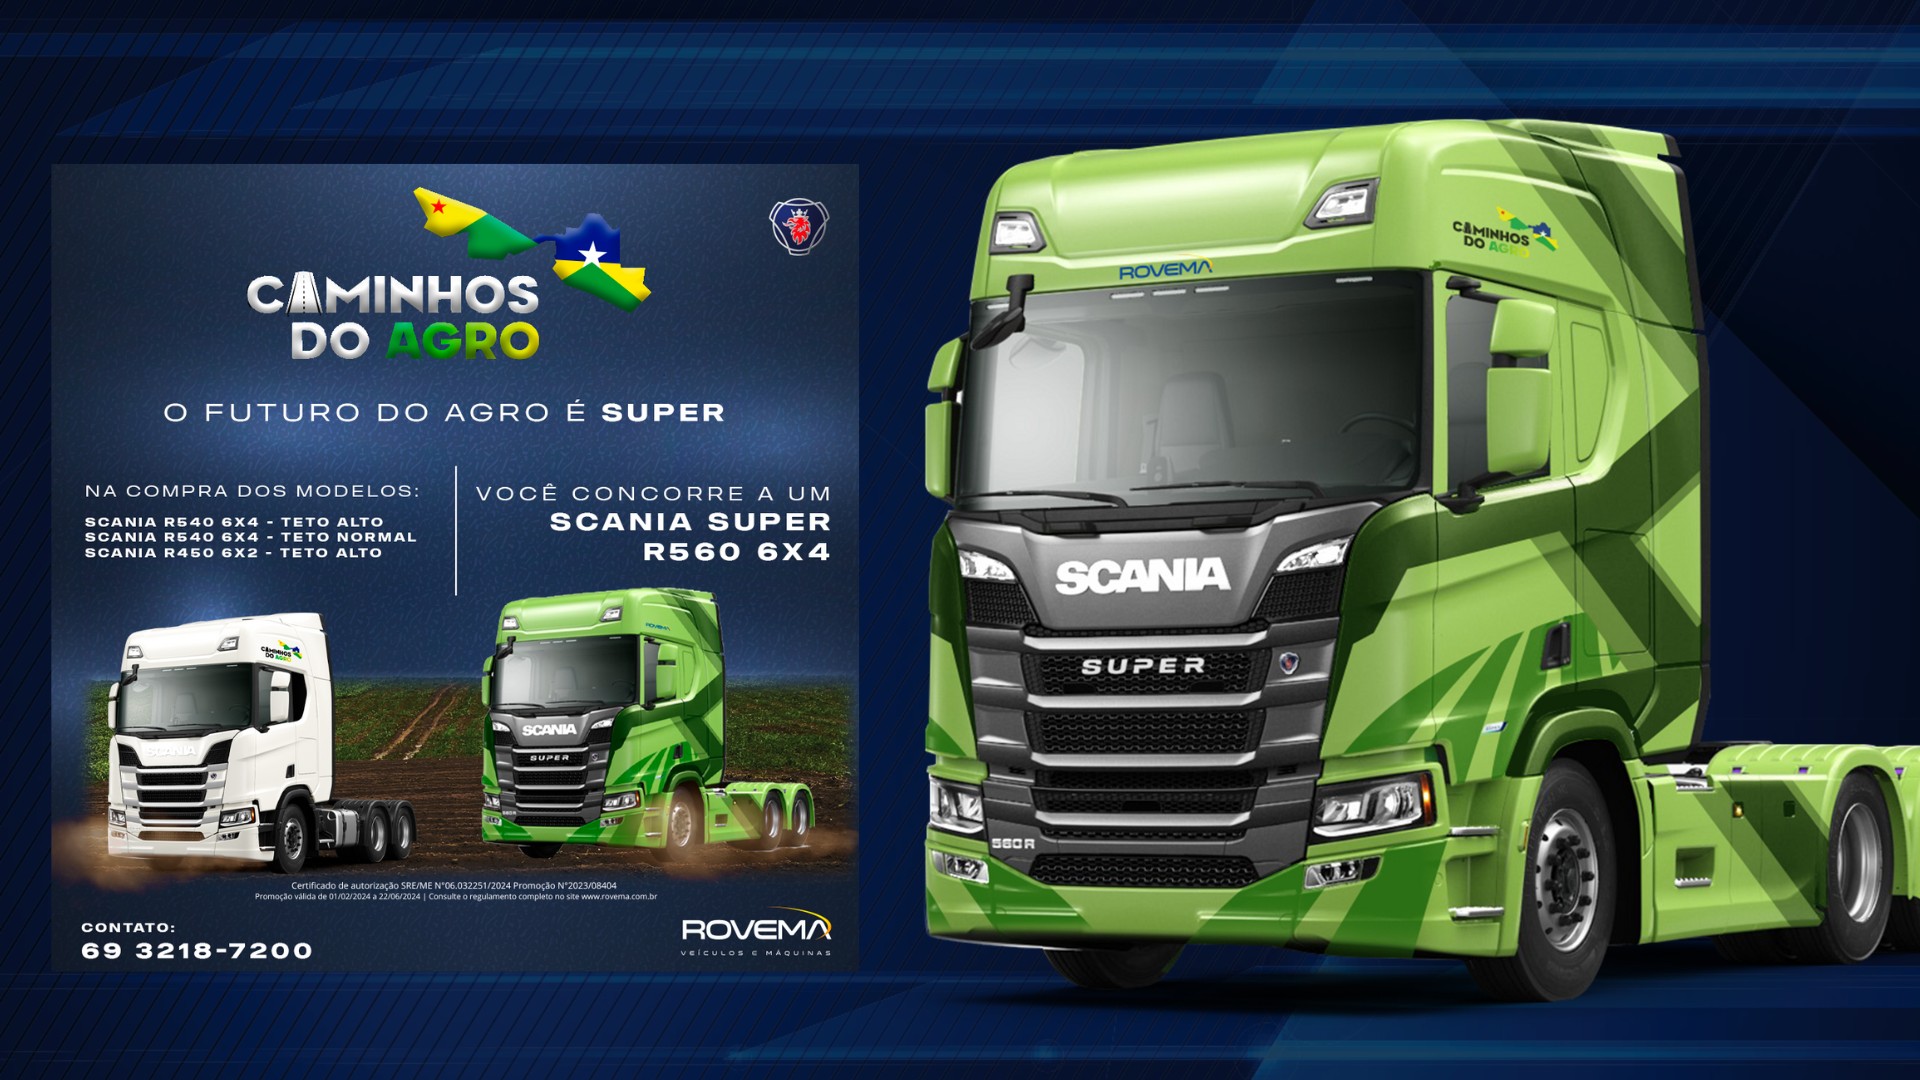 Rovema veículos lança “caminhos do agro” com caminhões Scania para RO e AC